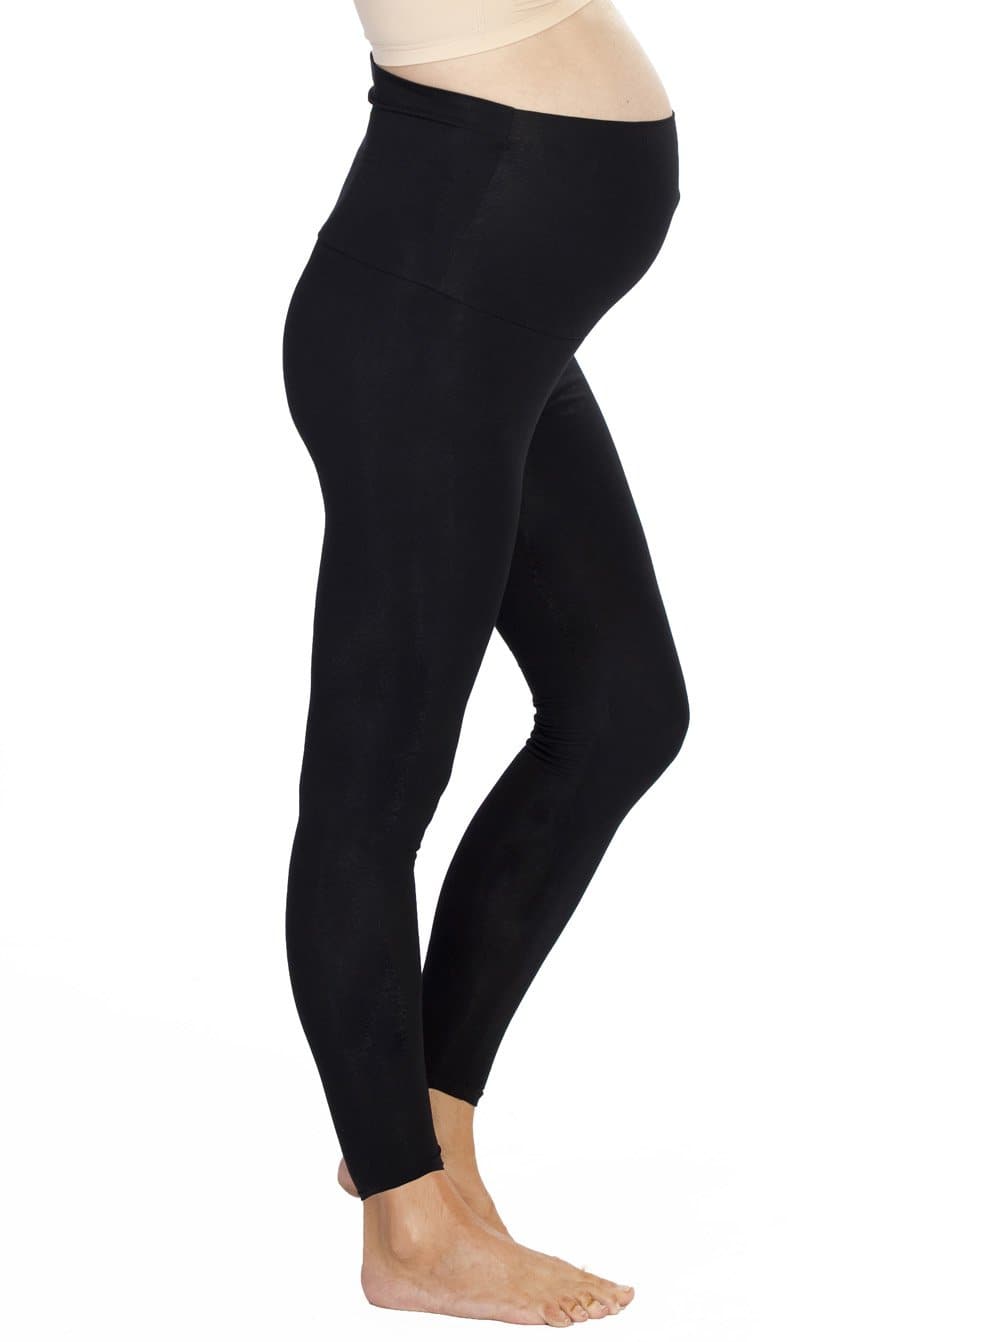 A model in 2 pack black maternity foldable waist leggings, rightside (4506713227367)